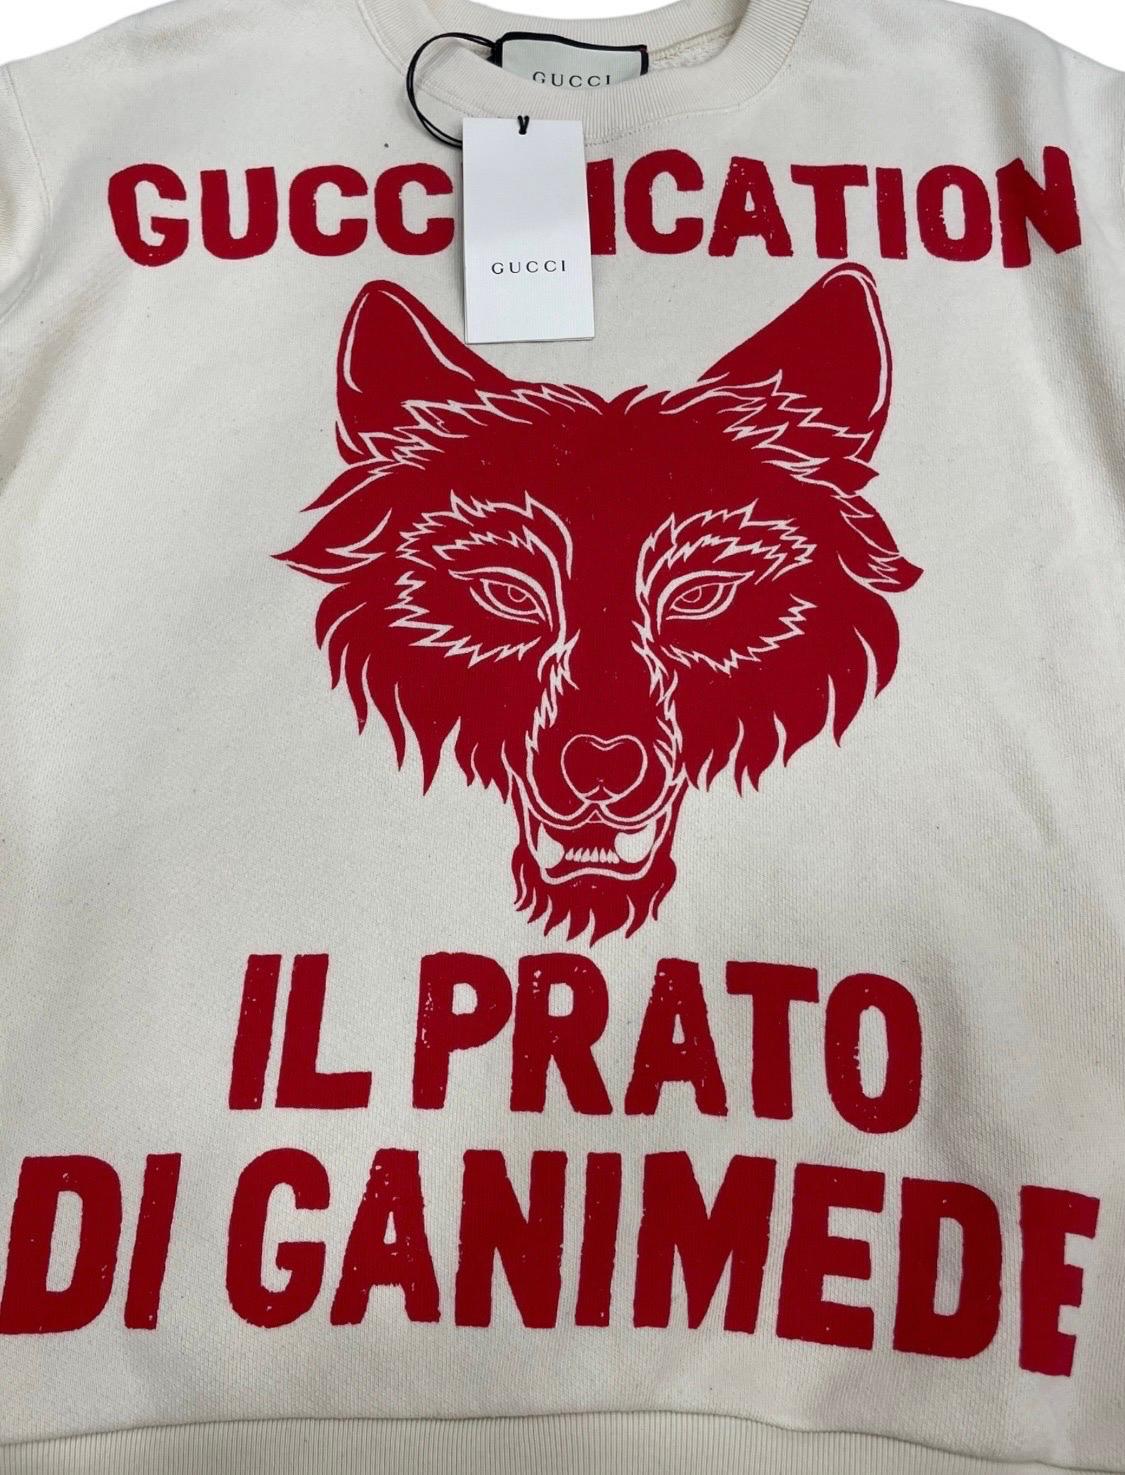 Felpa firmata Gucci, modello Il prato di Ganimede, realizzata in cotone garzato bianco e rosso. Taglia S. L'articolo si presenta in ottime condizioni, ancora